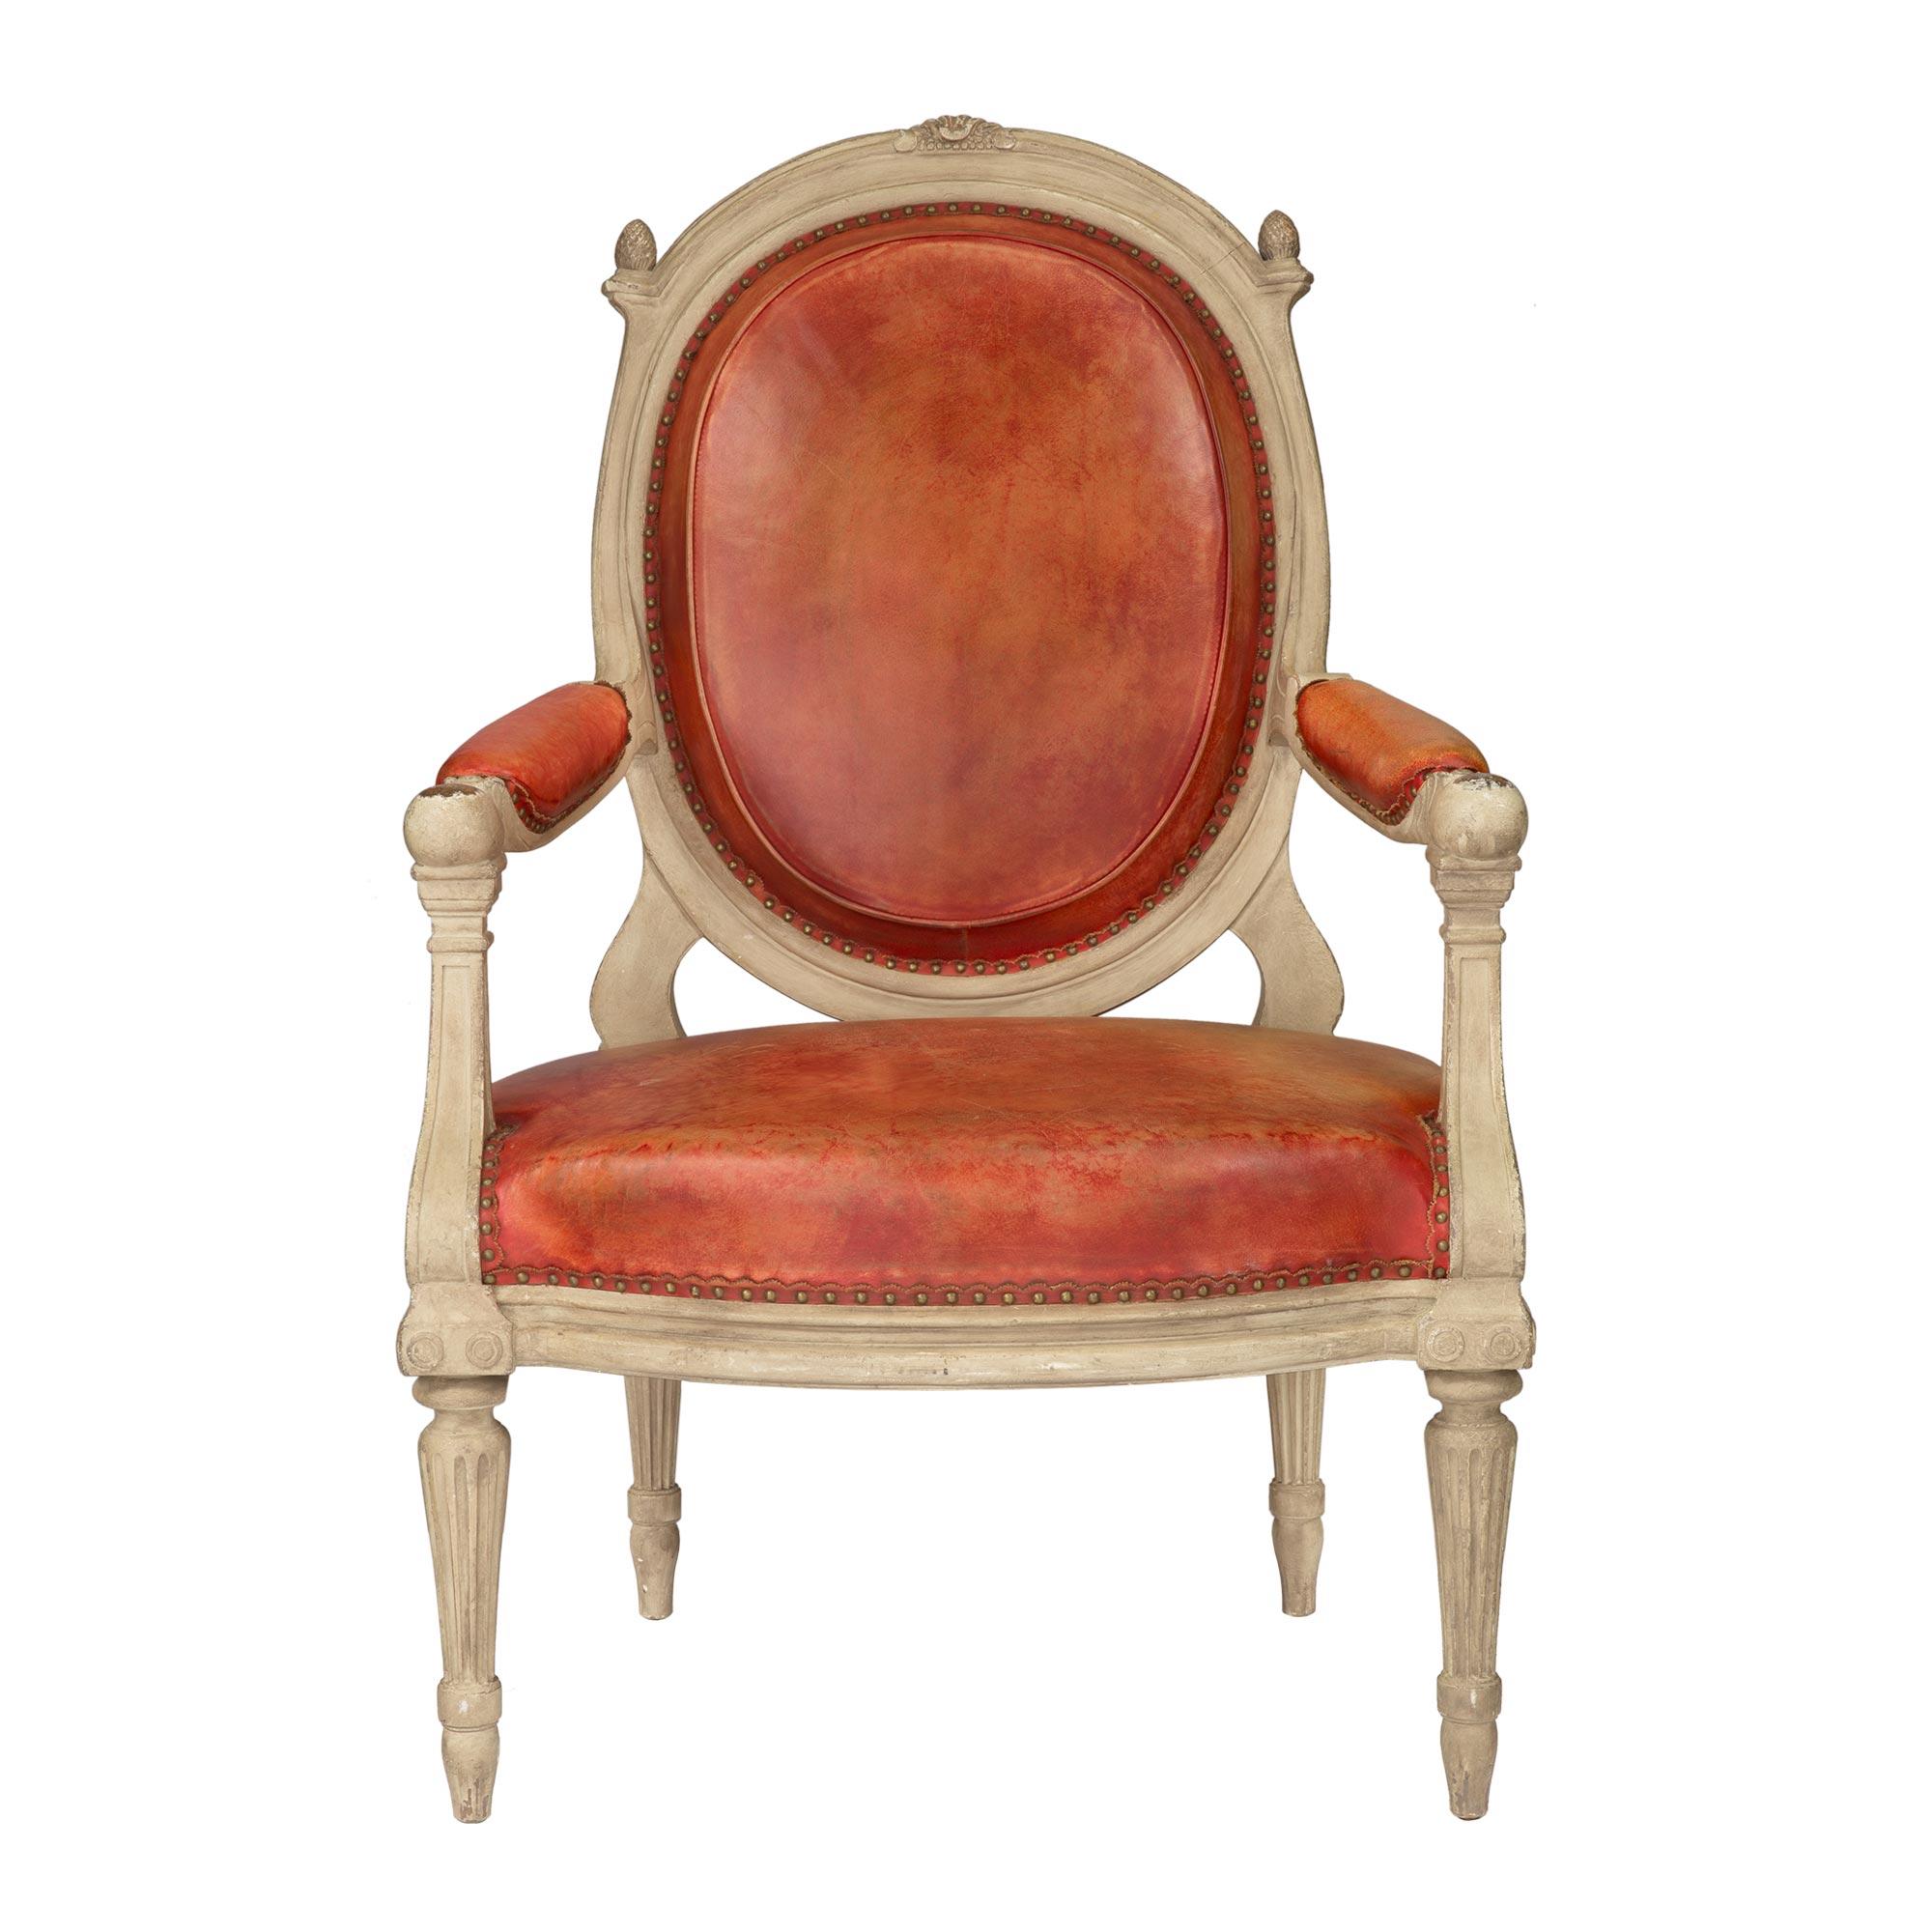 Ein auffälliger und vollständiger Satz von vier kontinentalen Sesseln im Stil Louis XVI des 19. Jahrhunderts aus patiniertem Holz und rotem Leder. Jeder schöne Stuhl steht auf eleganten, sich verjüngenden, kannelierten Rundbeinen mit fein